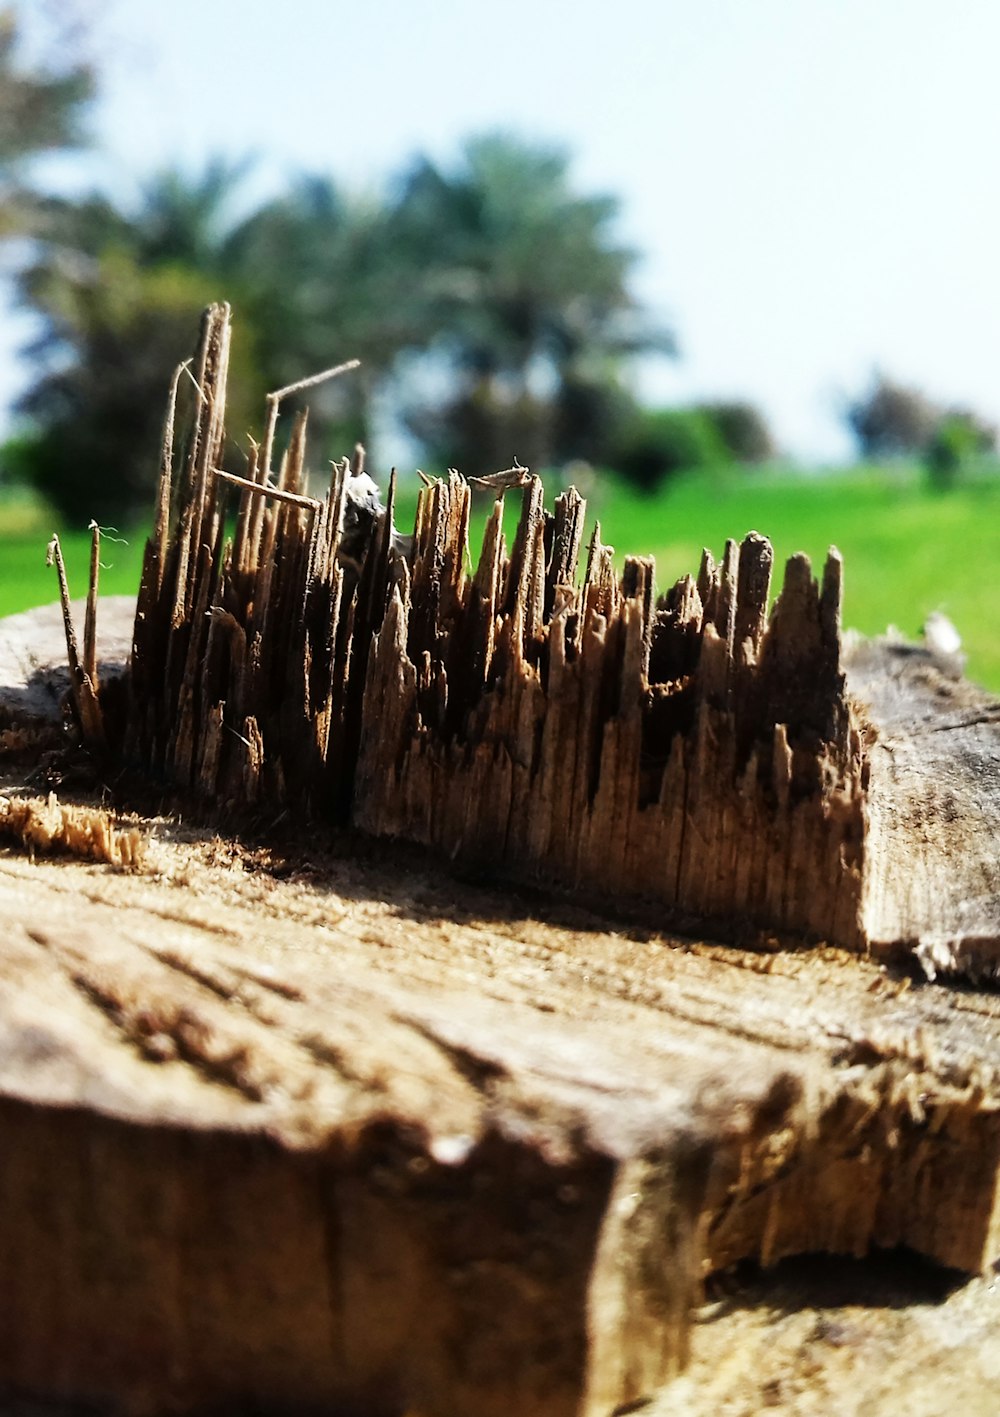 a pile of cut wood